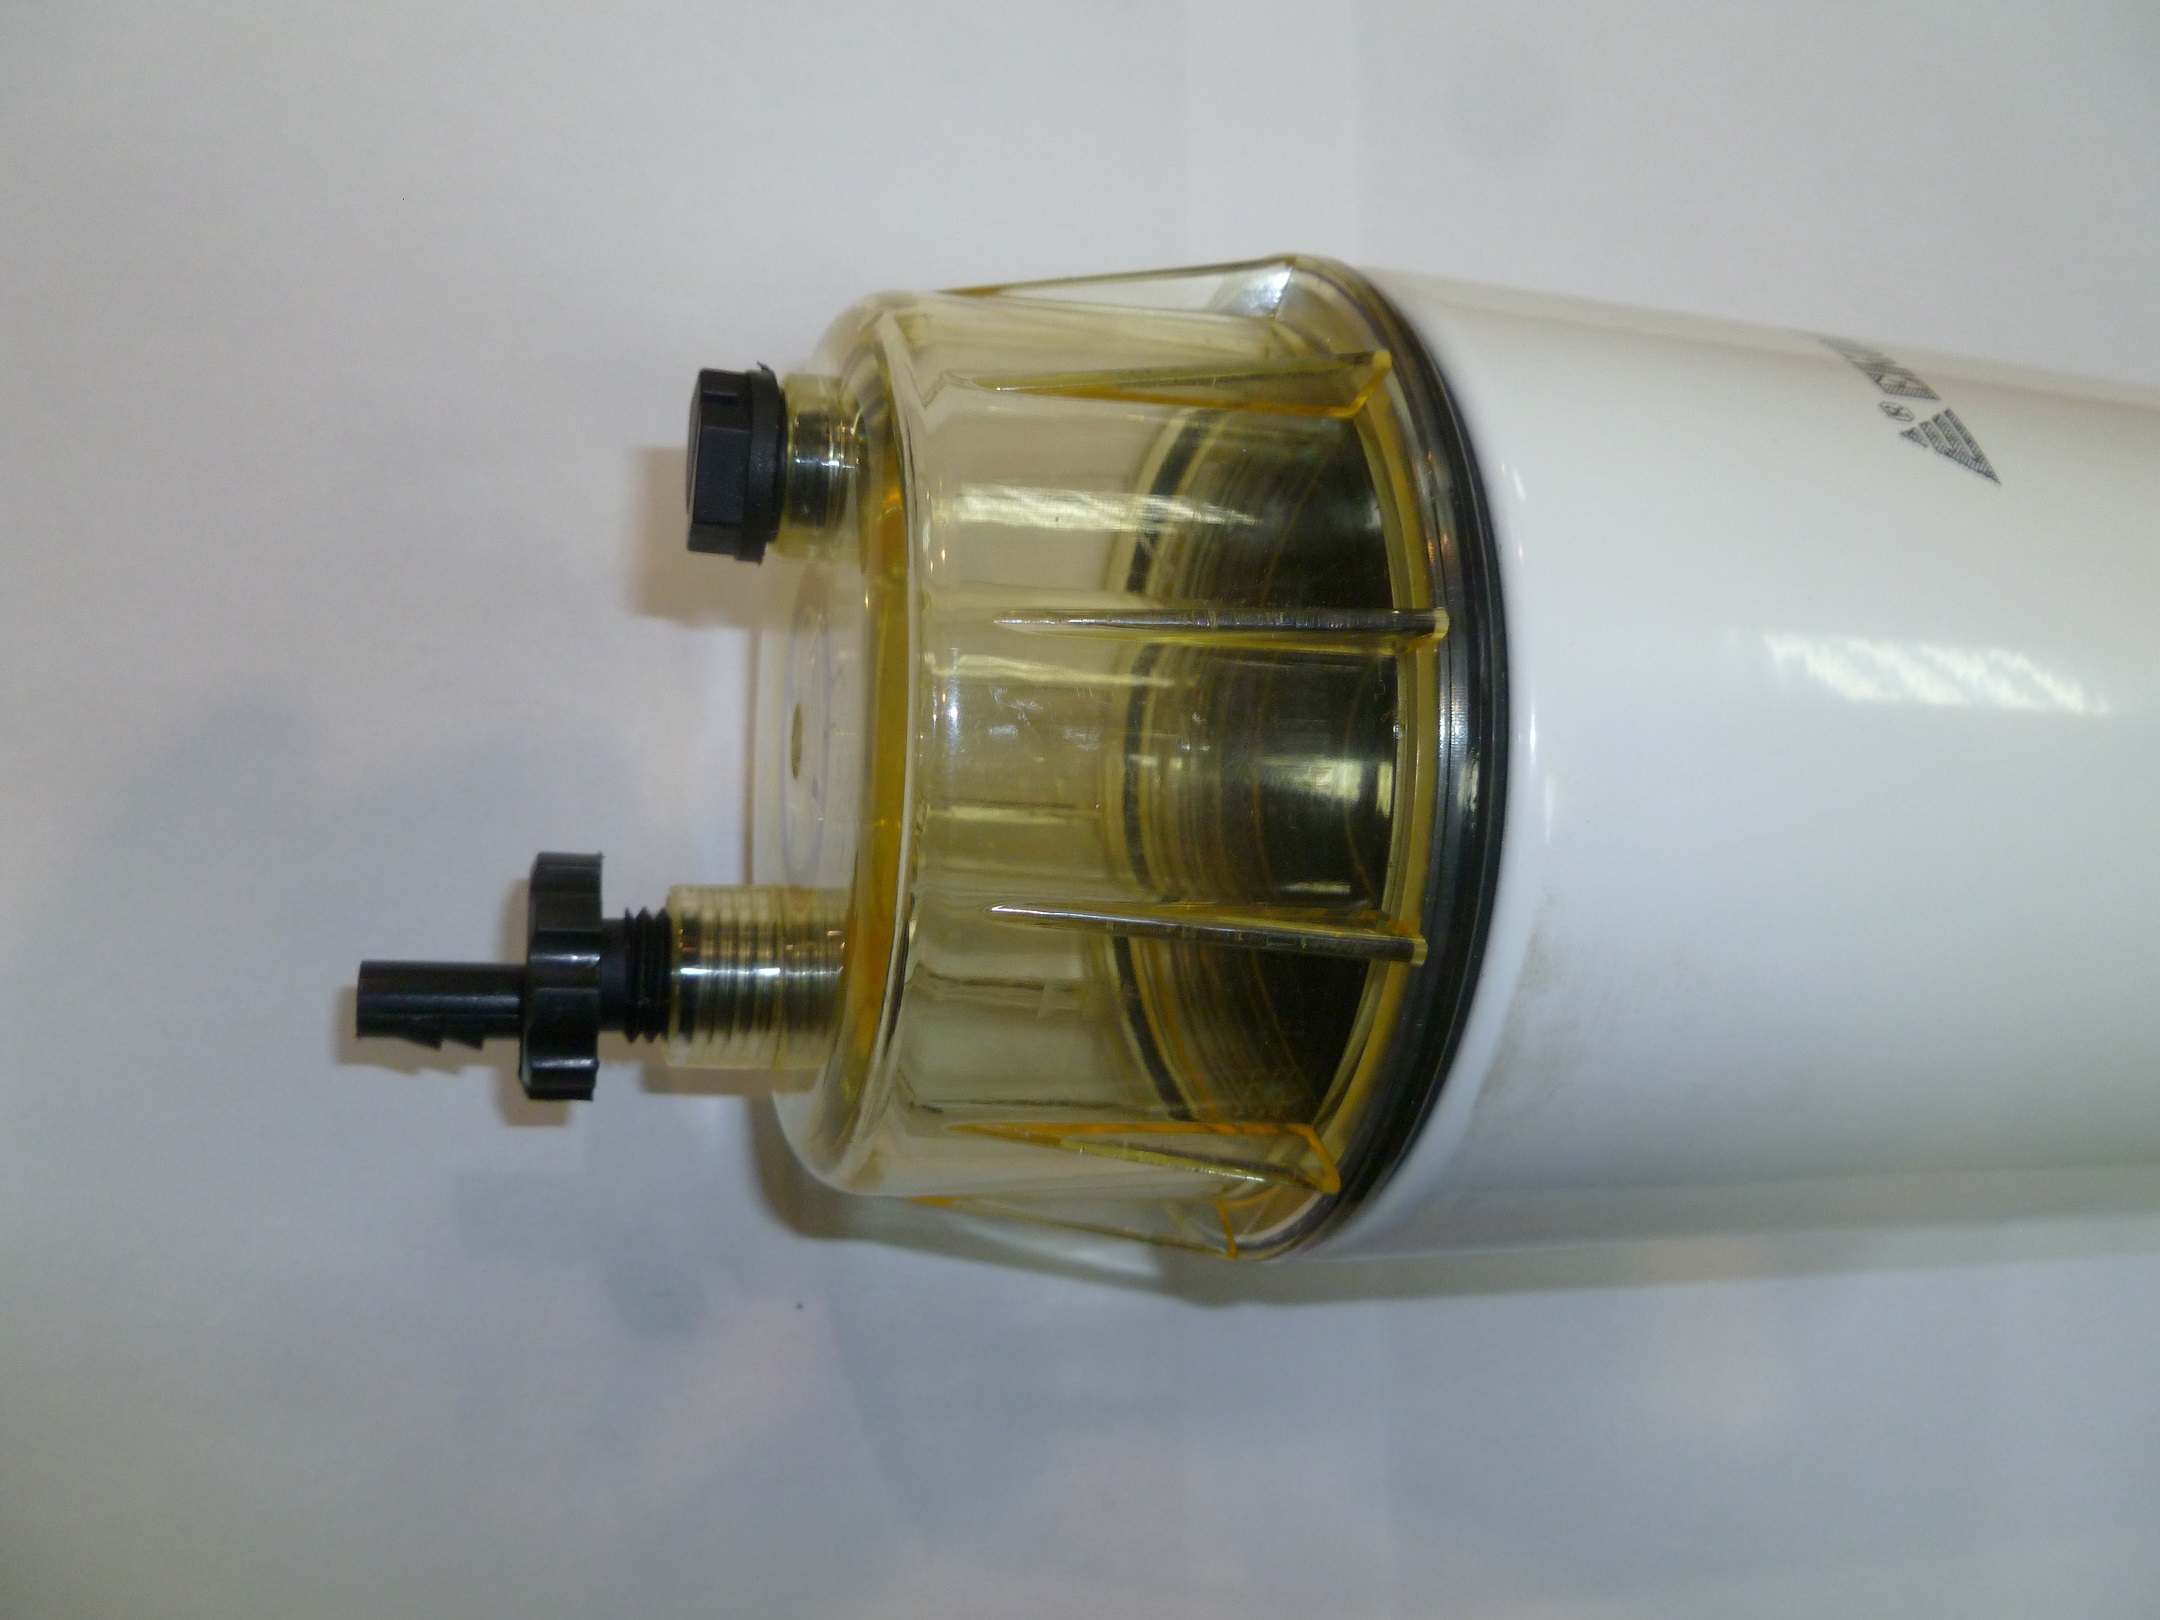 Фильтр топливный сепаратор BF8M1015C-LA G1A/Fuel filter